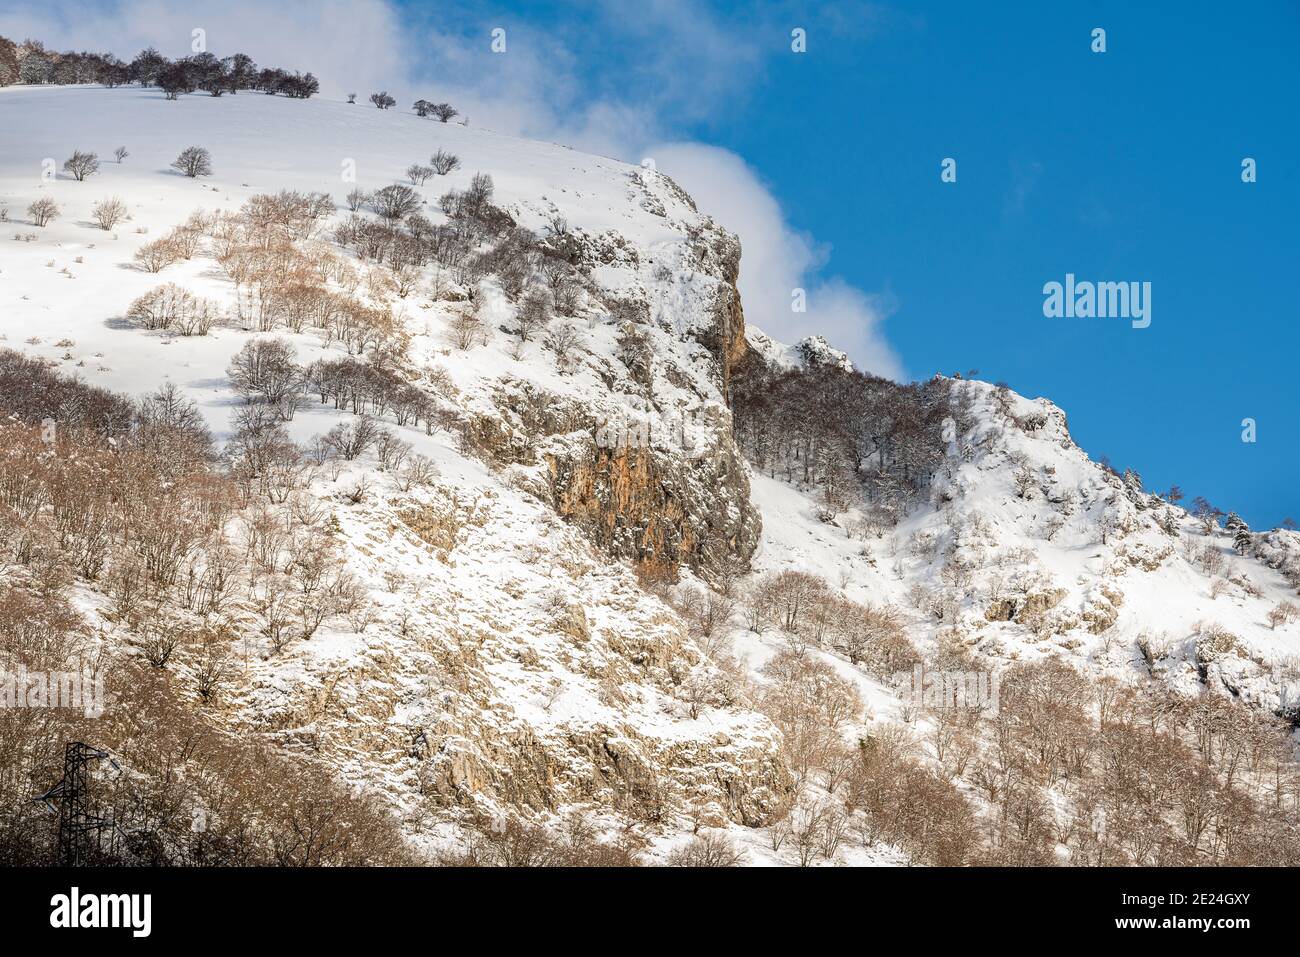 Paysage d'hiver avec les montagnes des Abruzzes Lazio et le parc national Molise couvert de neige. Abruzzes, Italie, Europe Banque D'Images